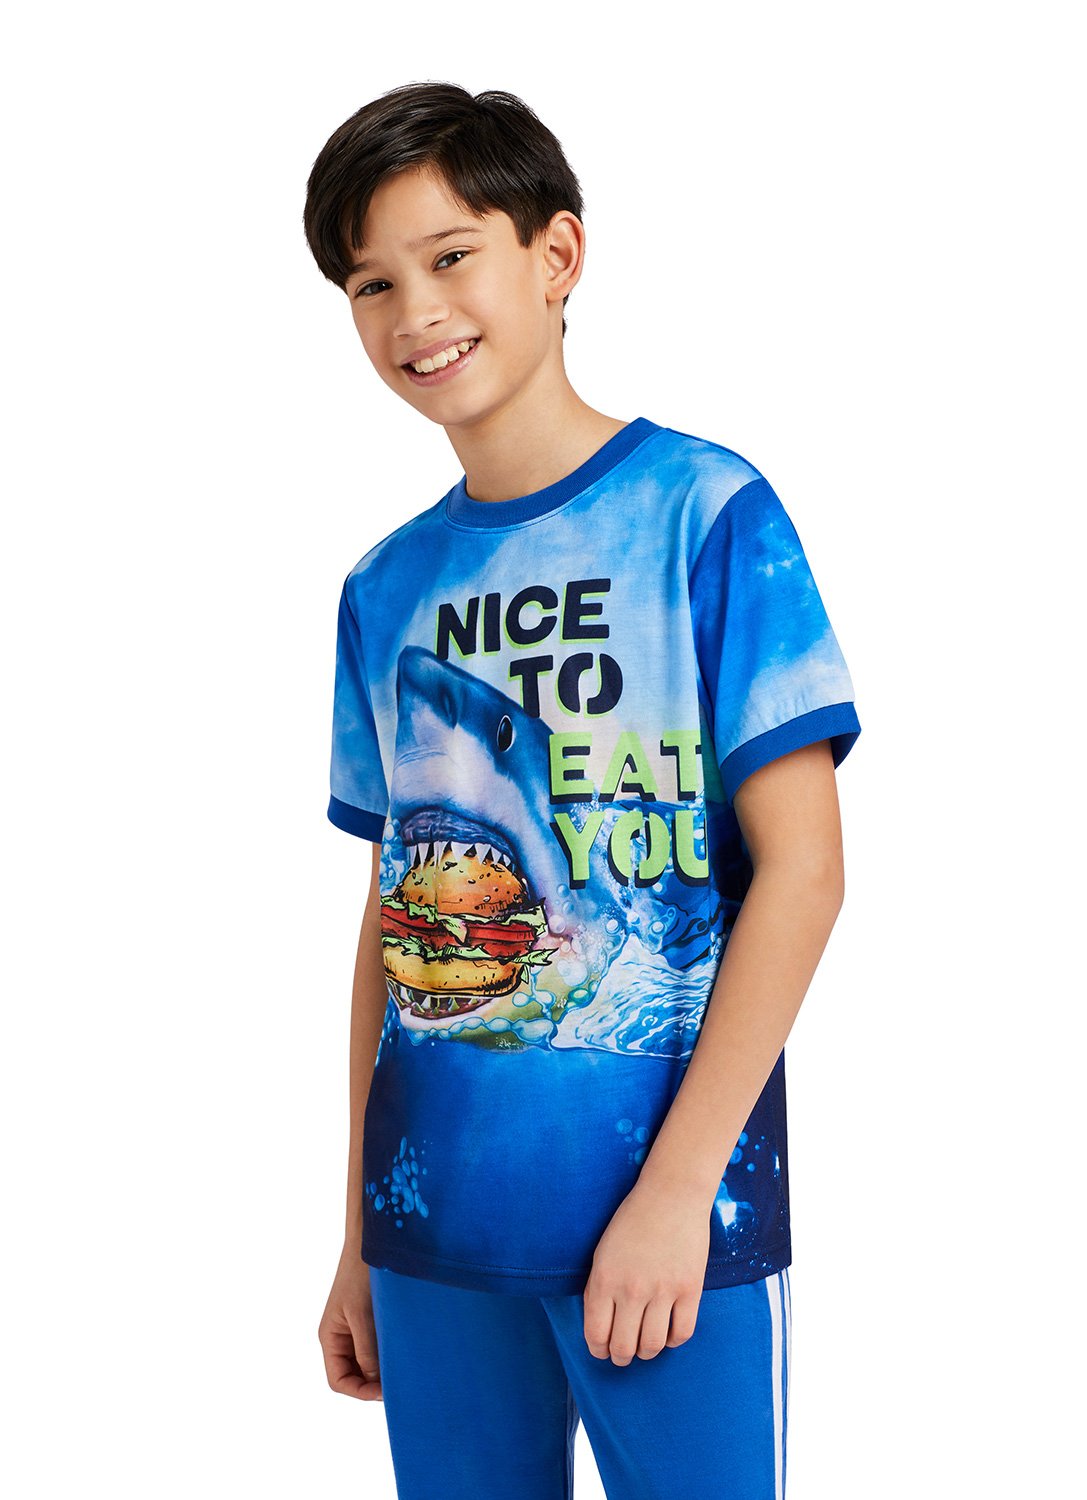 Boy smiling with Shark eating a hamburger Print Top and Blue Jogger Pants 